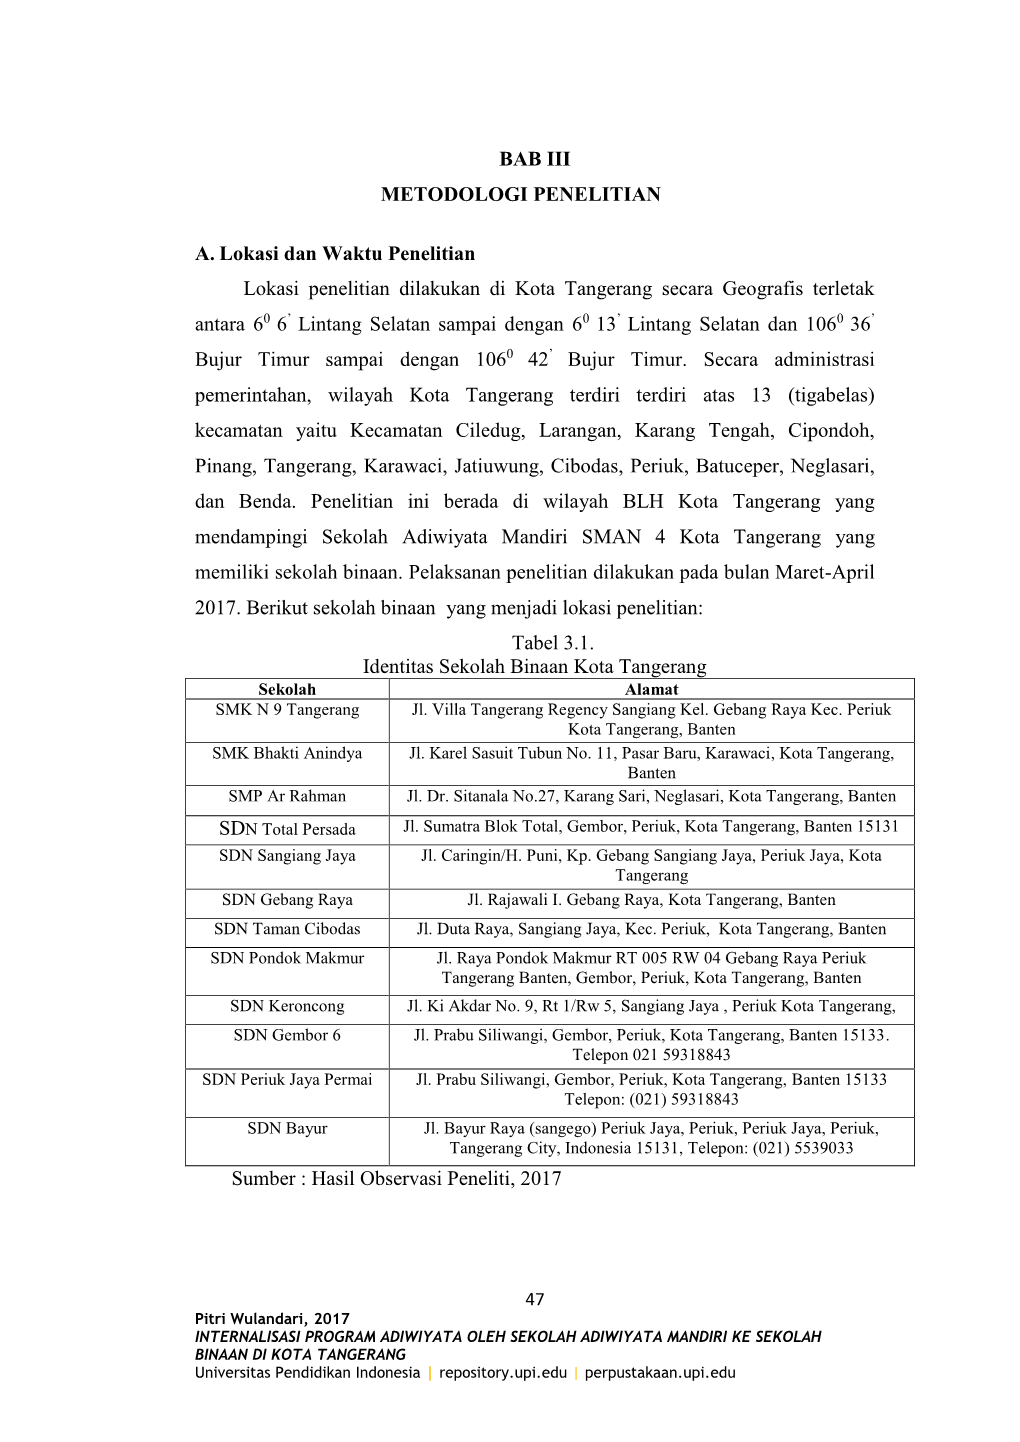 BAB III METODOLOGI PENELITIAN A. Lokasi Dan Waktu Penelitian Lokasi Penelitian Dilakukan Di Kota Tangerang Secara Geografis